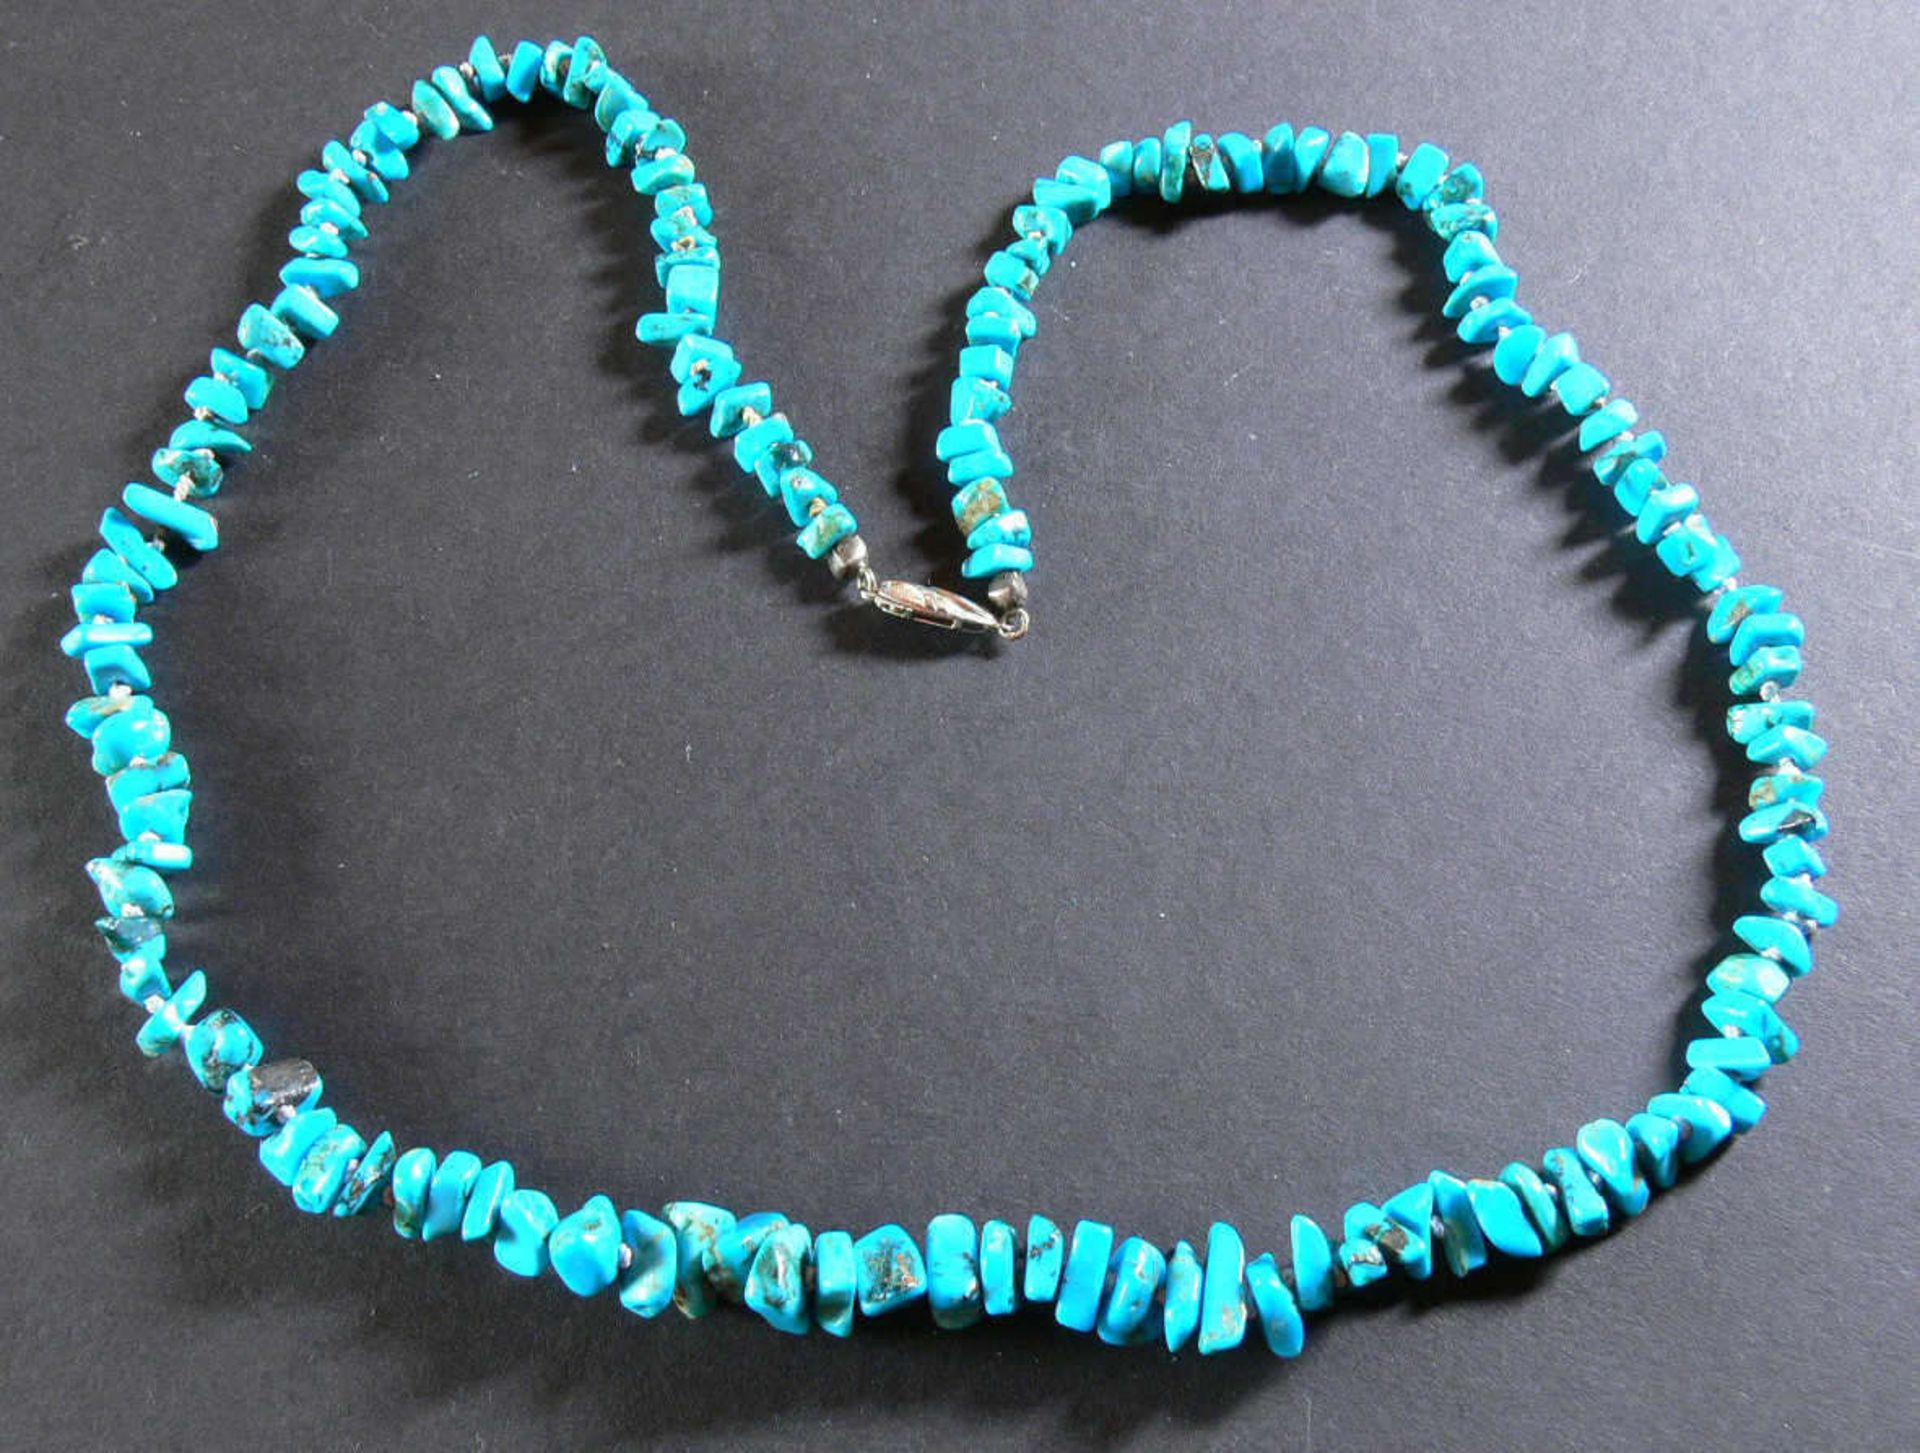 Türkis - Kette mit Silber - Verschluss. Silber 800. Länge: ca. 60 cm.Turquoise - necklace with